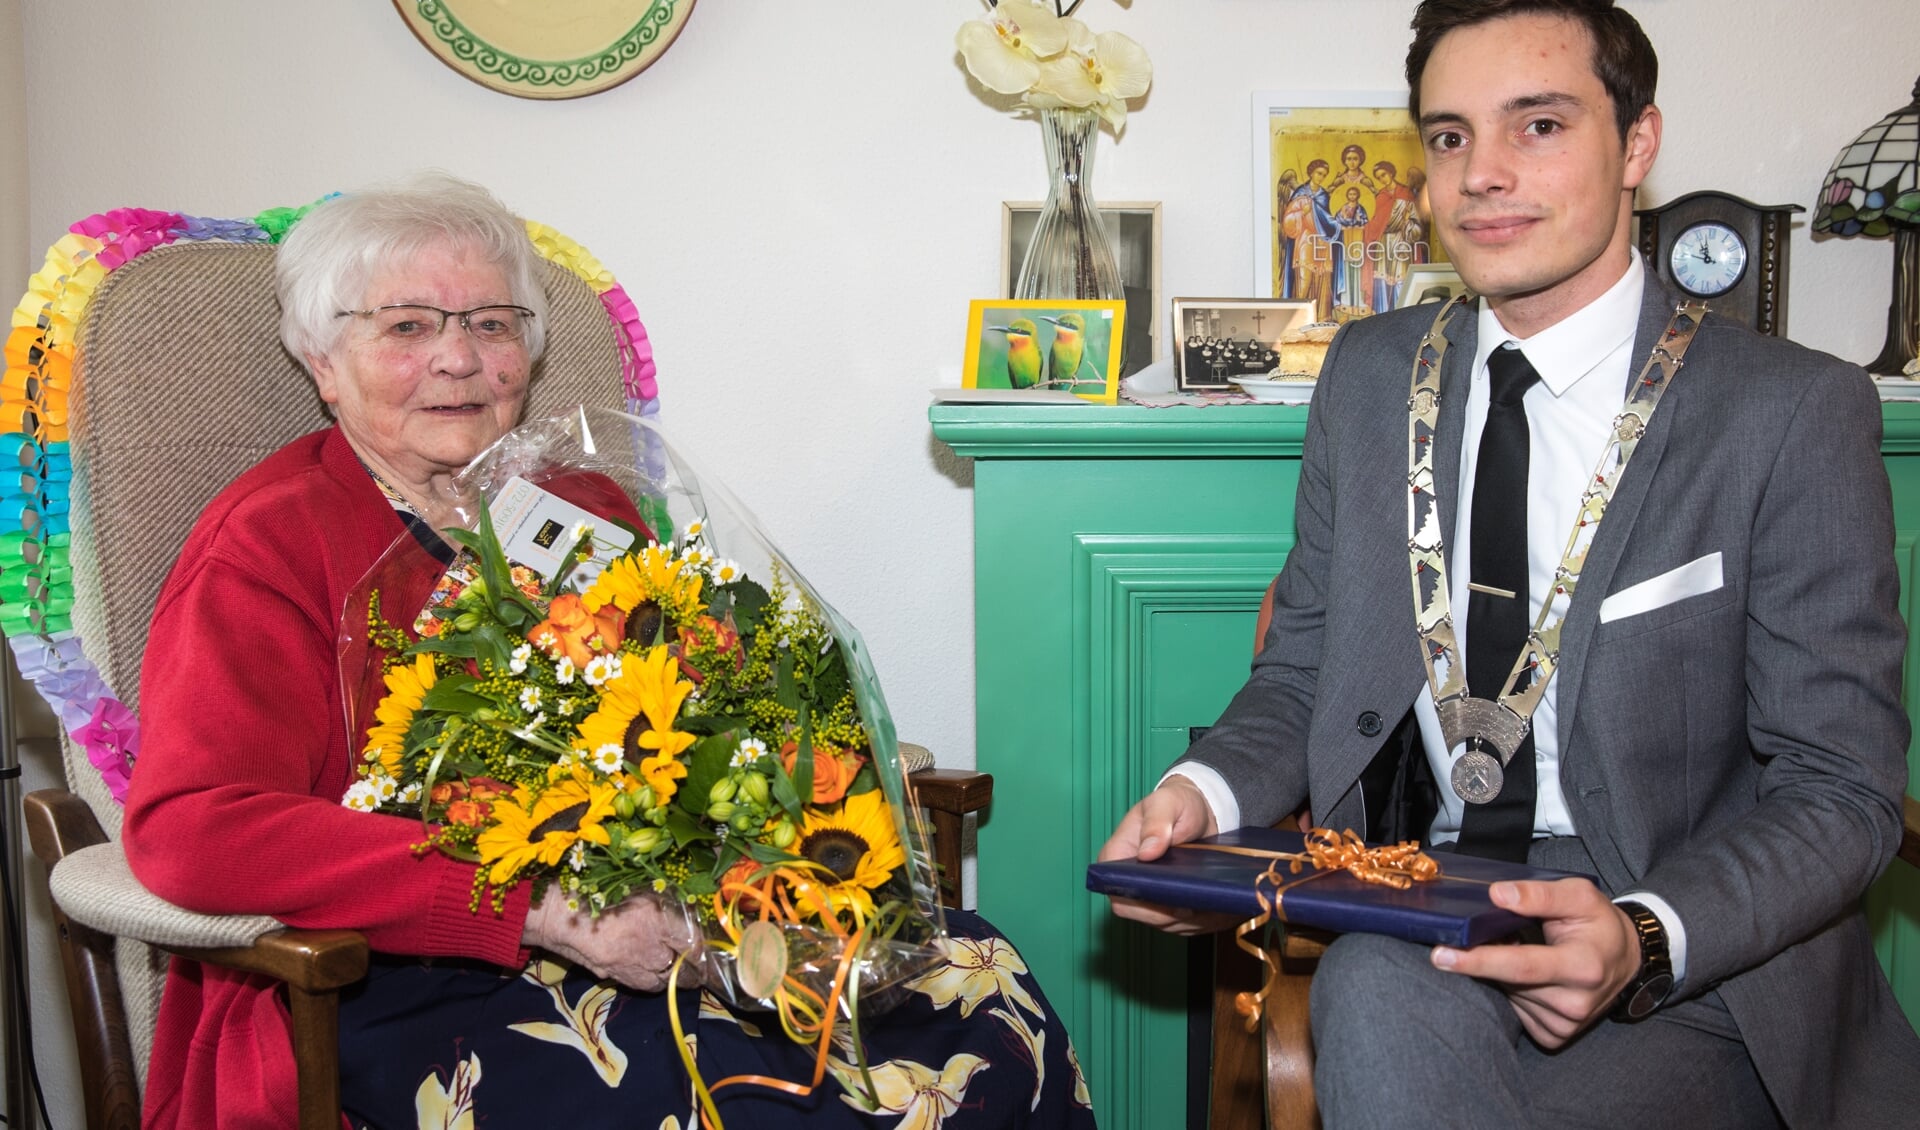 Mevrouw (zuster) Heijnis is op 8 mei wordt 100 jaar geworden! Zij vierde deze dag in aanwezigheid van loco burgemeester Klaas Valkering.